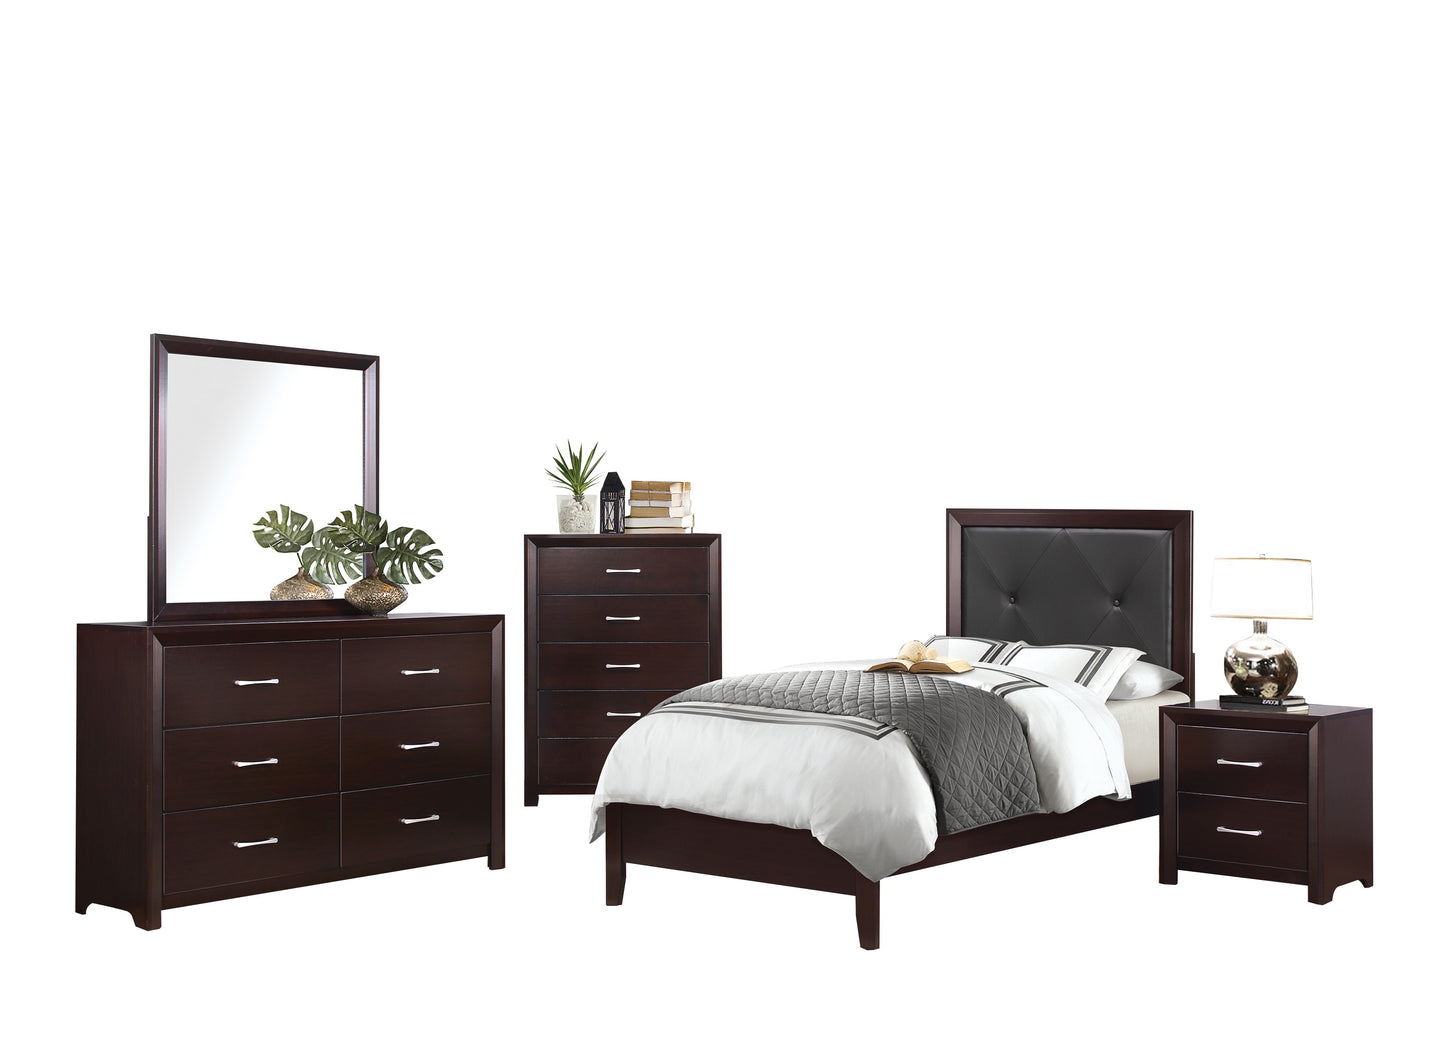 Eagen Casual 5PC Bedroom Set Twin Bed, Nightstand, Dresser, Mirror, Chest in Brown Espresso